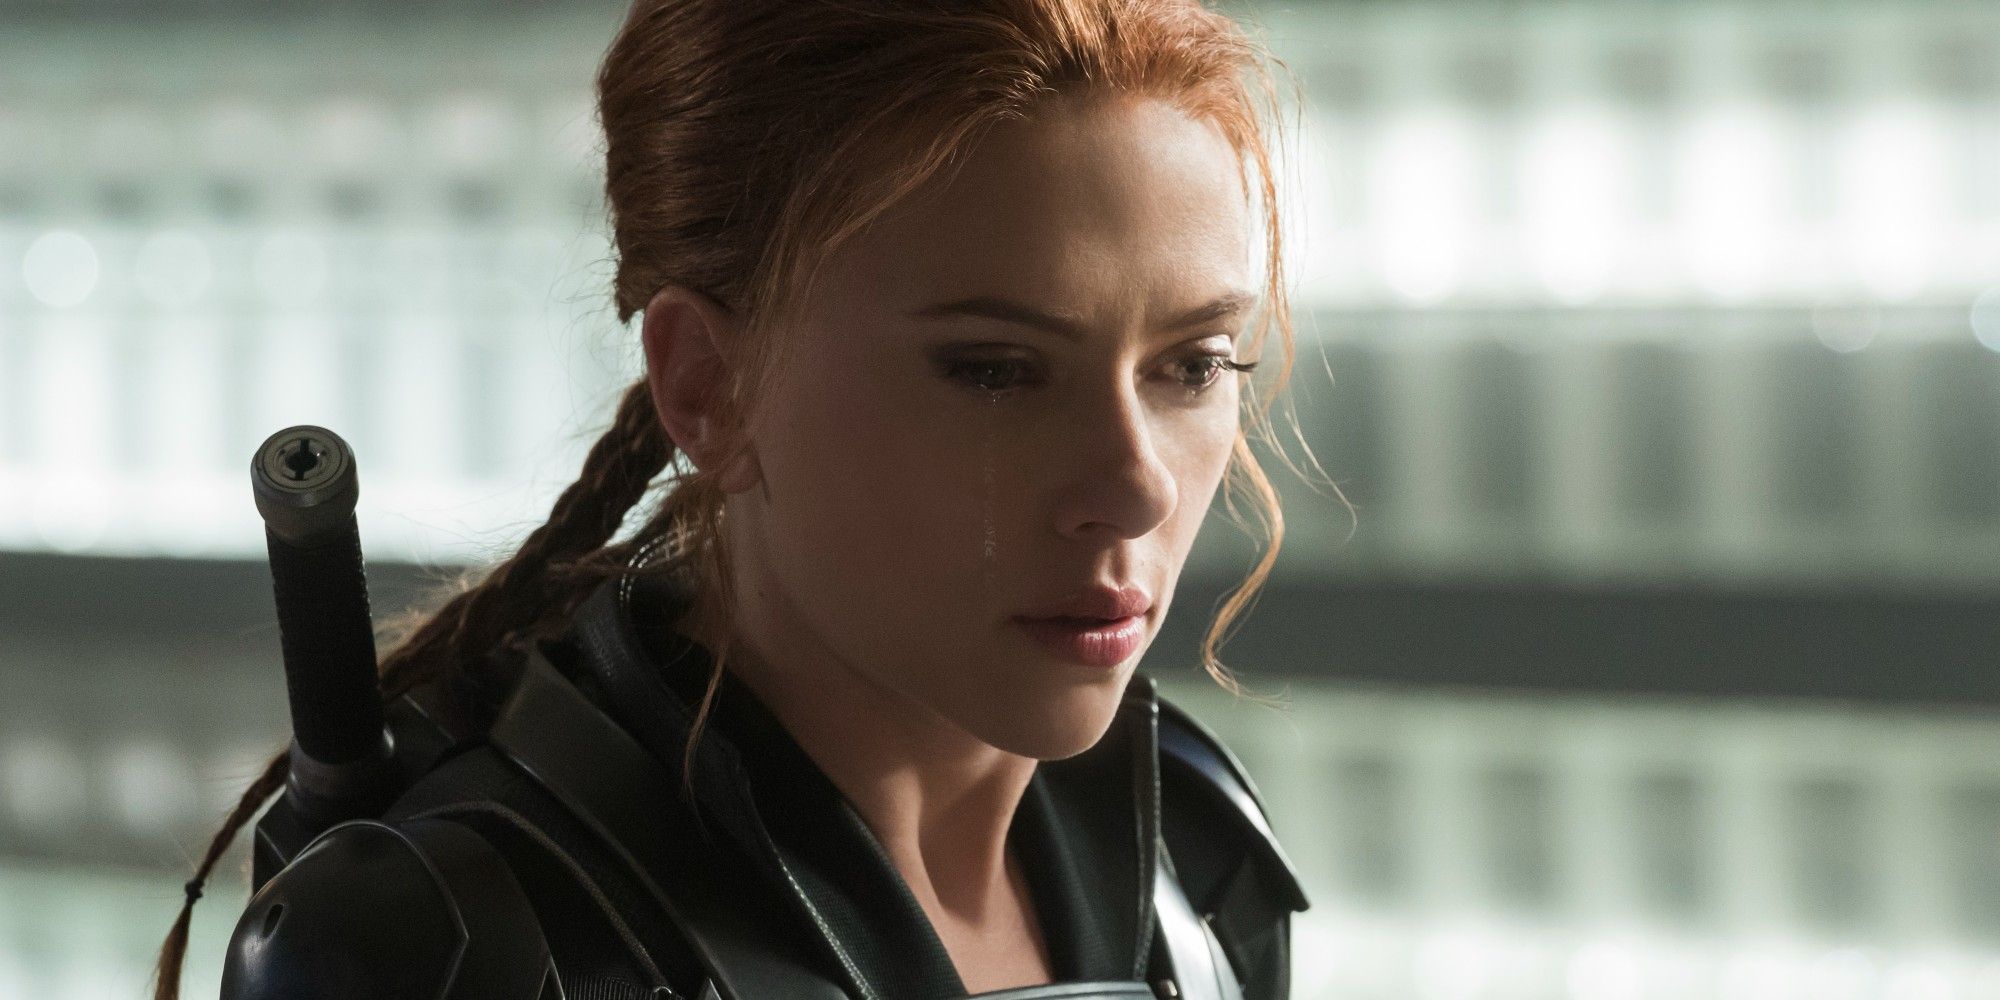 Natasha Romanoff cries and looks down in Black Widow Movie